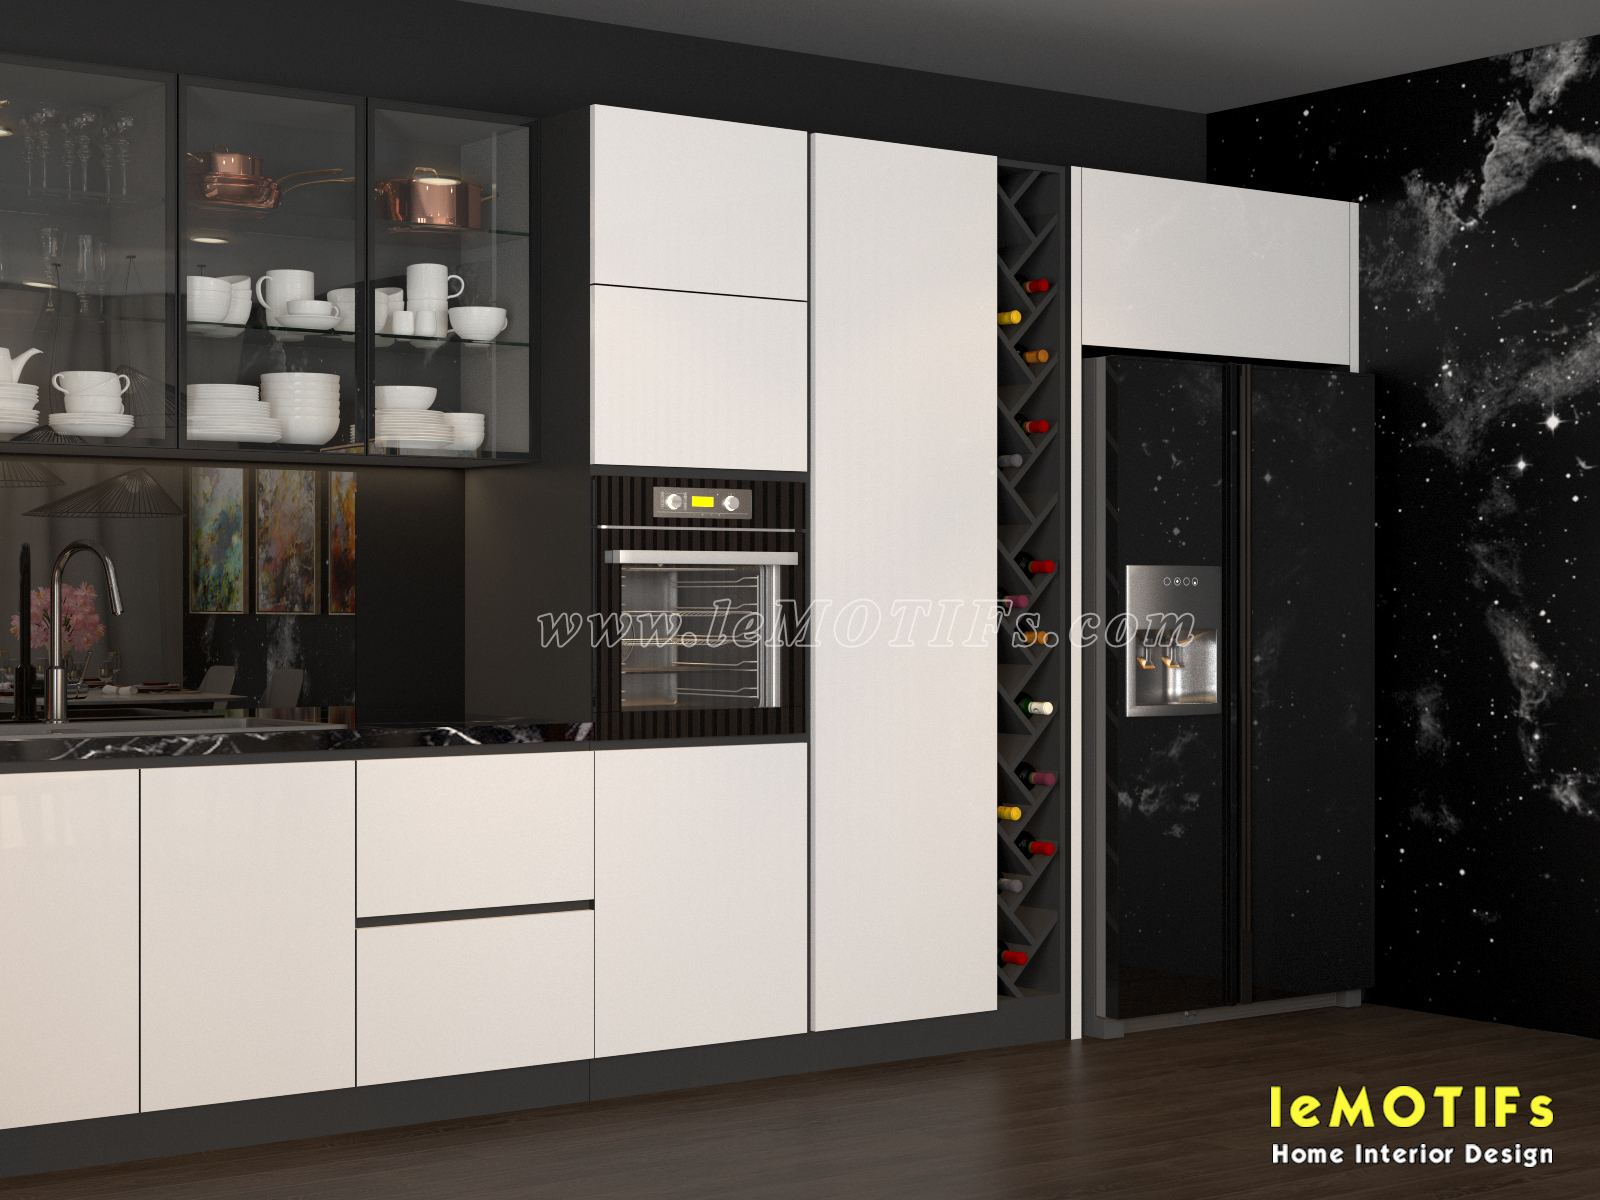 <img src=” http://lemotifs.com/wp-content/uploads/2019/05/Thiet-ke-tu-bep-phong-cach-trang-va-den-nha-co-mai-quan-10-V5.jpg” alt=”thiết kế tủ bếp trắng và đen />